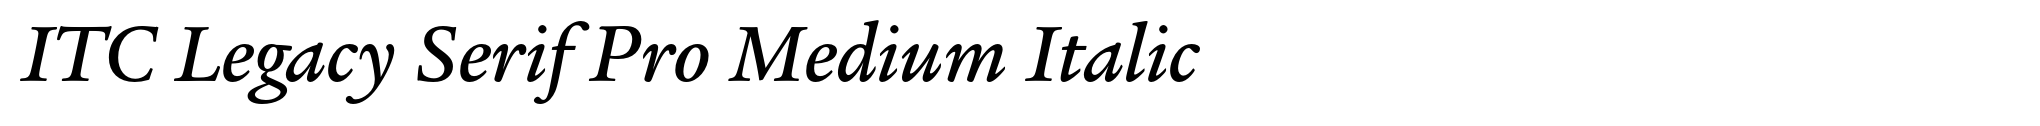 ITC Legacy Serif Pro Medium Italic image